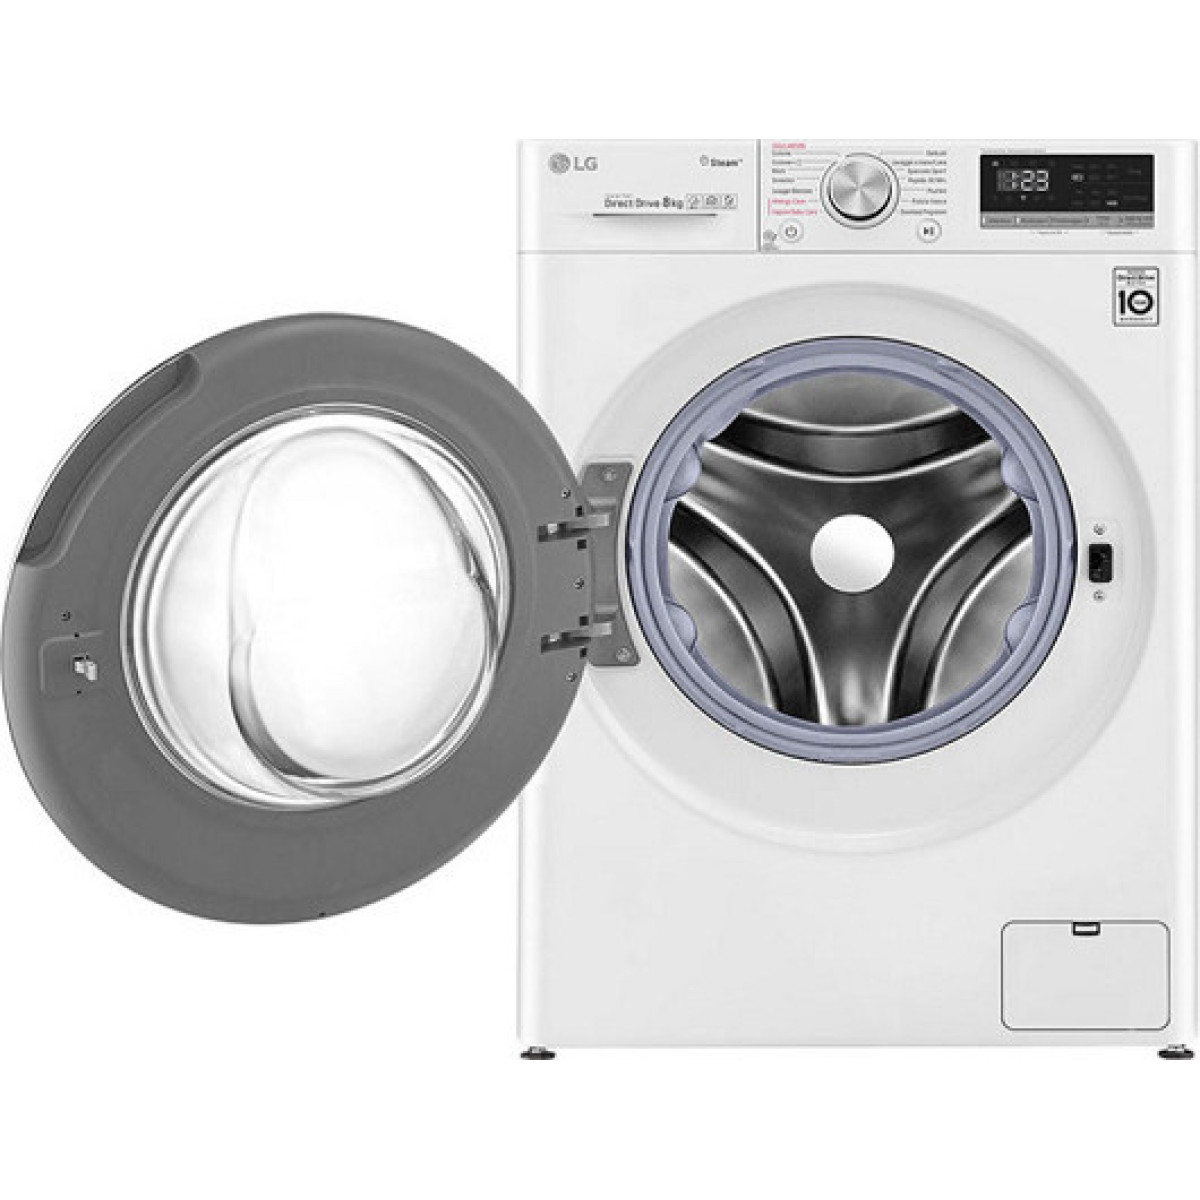 Πλυντήριο Ρούχων LG F4WV508S0E Inverter Direct Drive 8kg με Ατμό 1400 Στροφών Πλυντήρια ρούχων